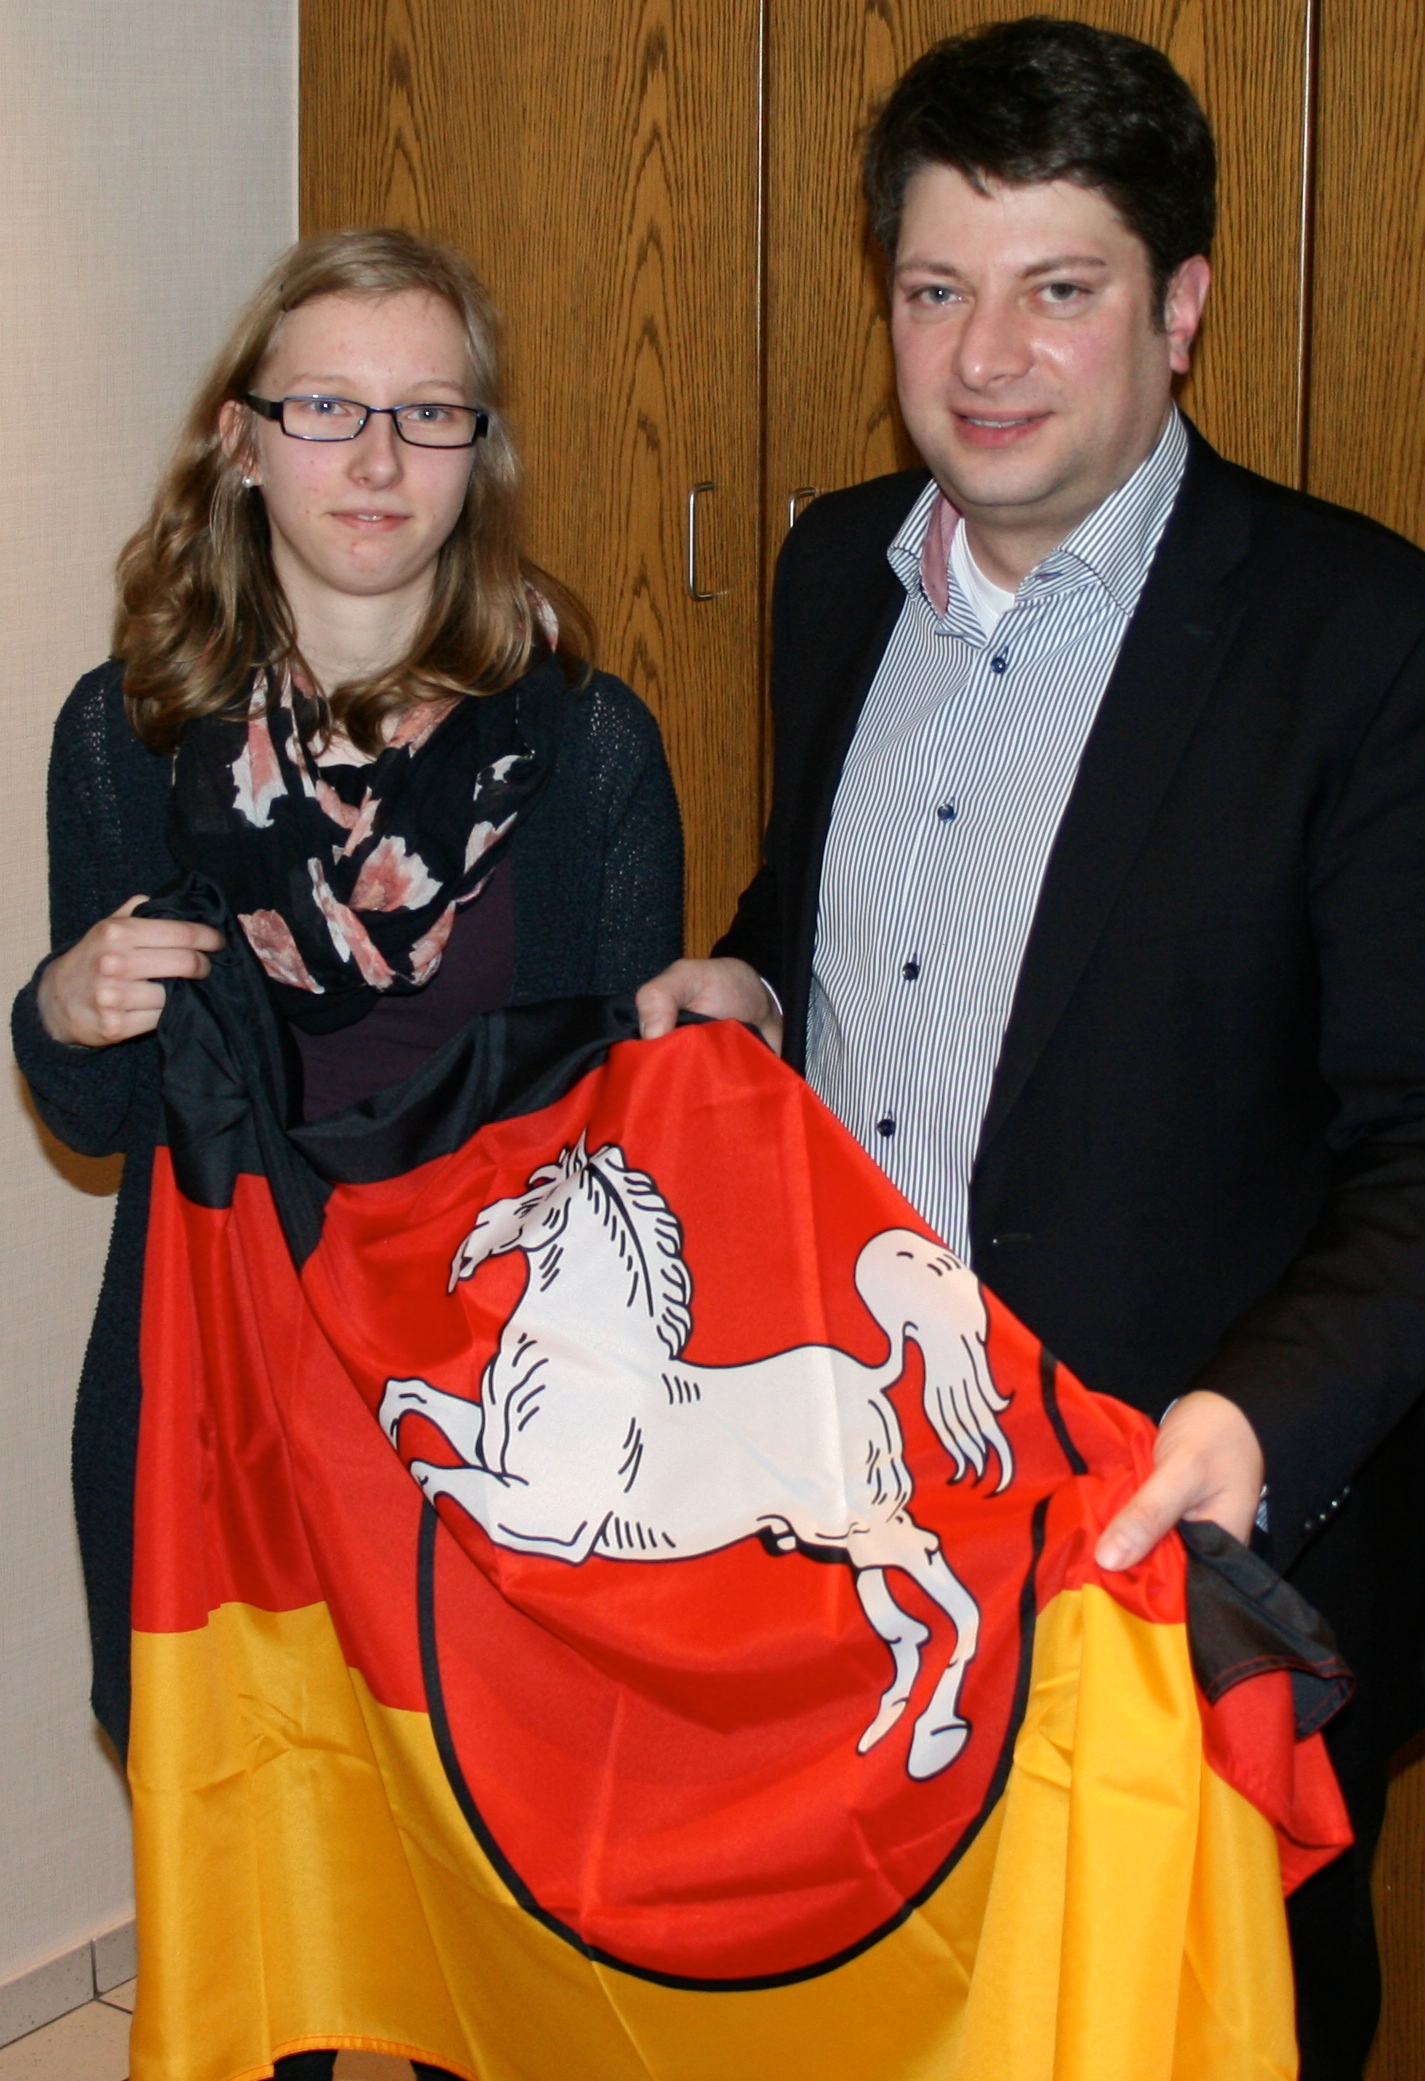 2015: Jana Klose aus Bersenbrück begleitet mich eine Woche lang im Rahmen des Hospitationsprogrammes "Schüler begleiten Abgeordnete" des Niedersächsischen Landtages.